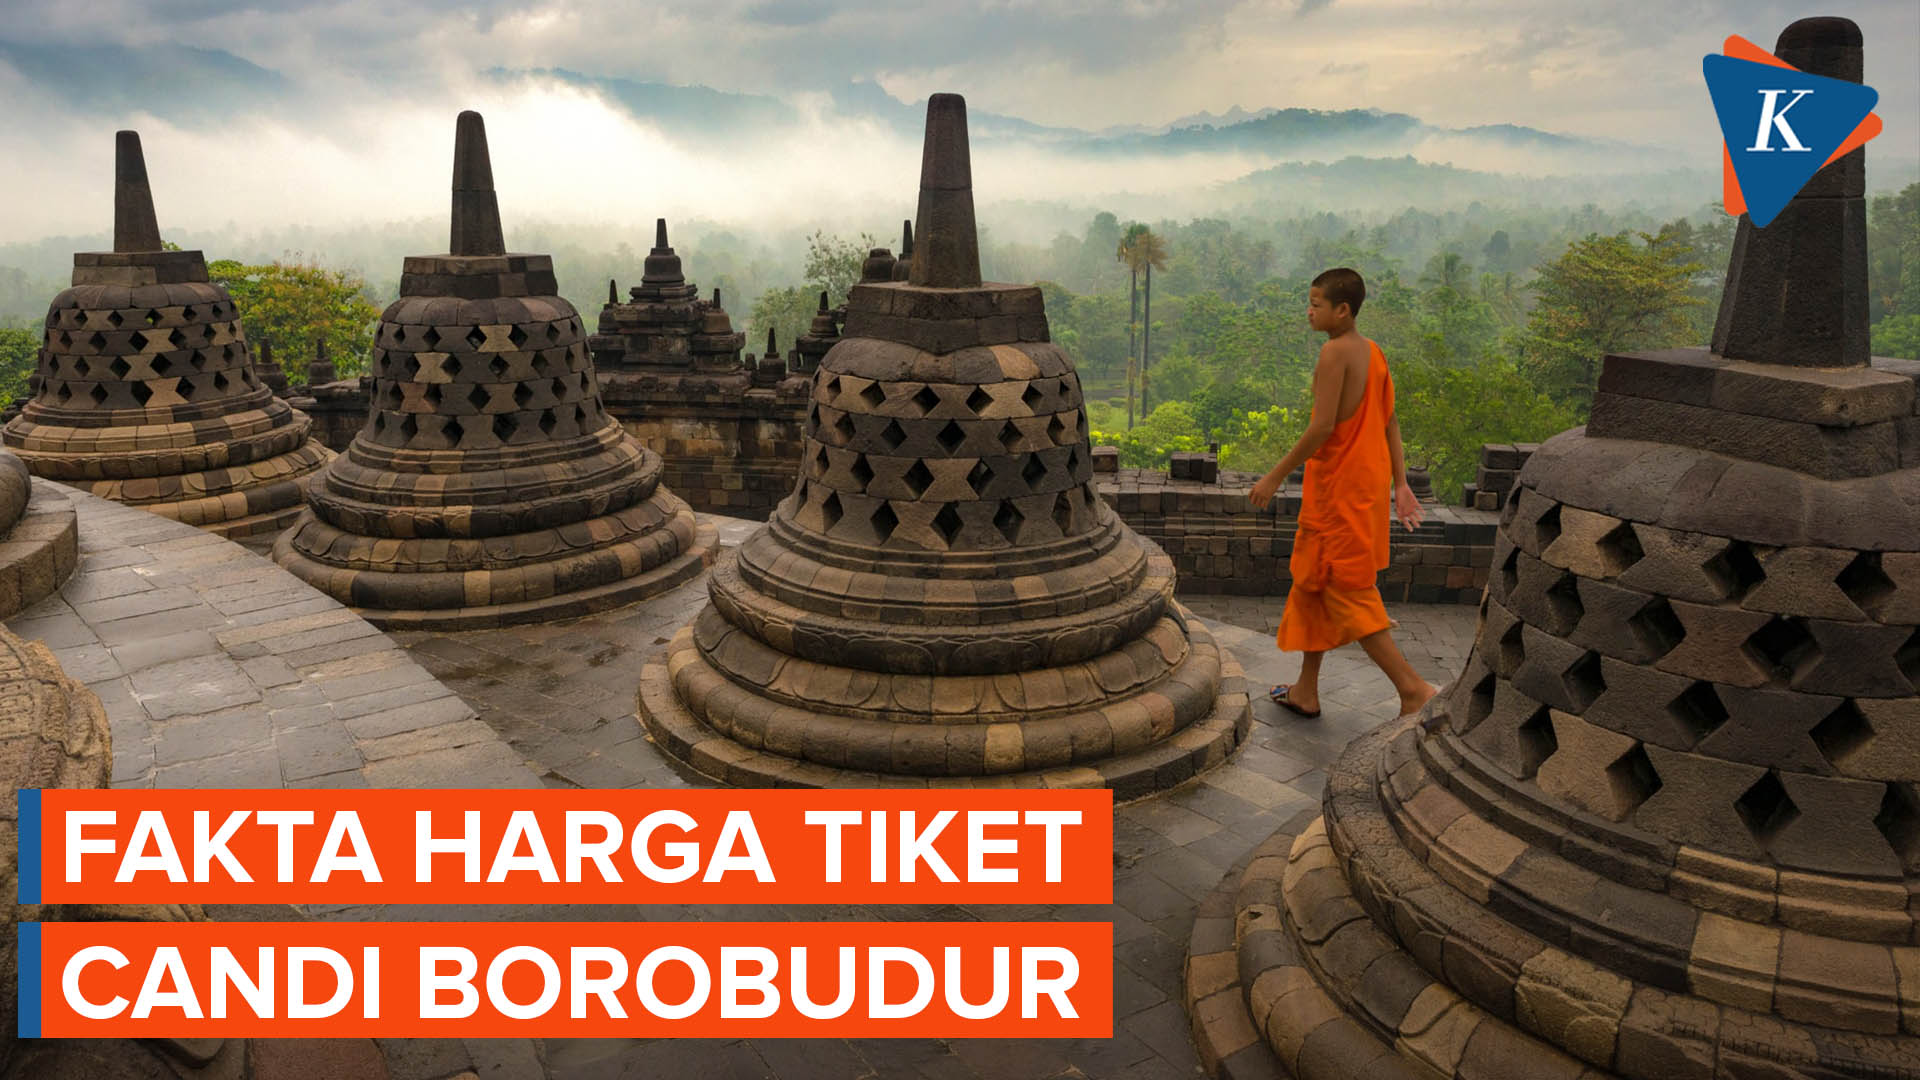 Heboh Tiket Candi Borobudur Rp 750.000, Begini Faktanya